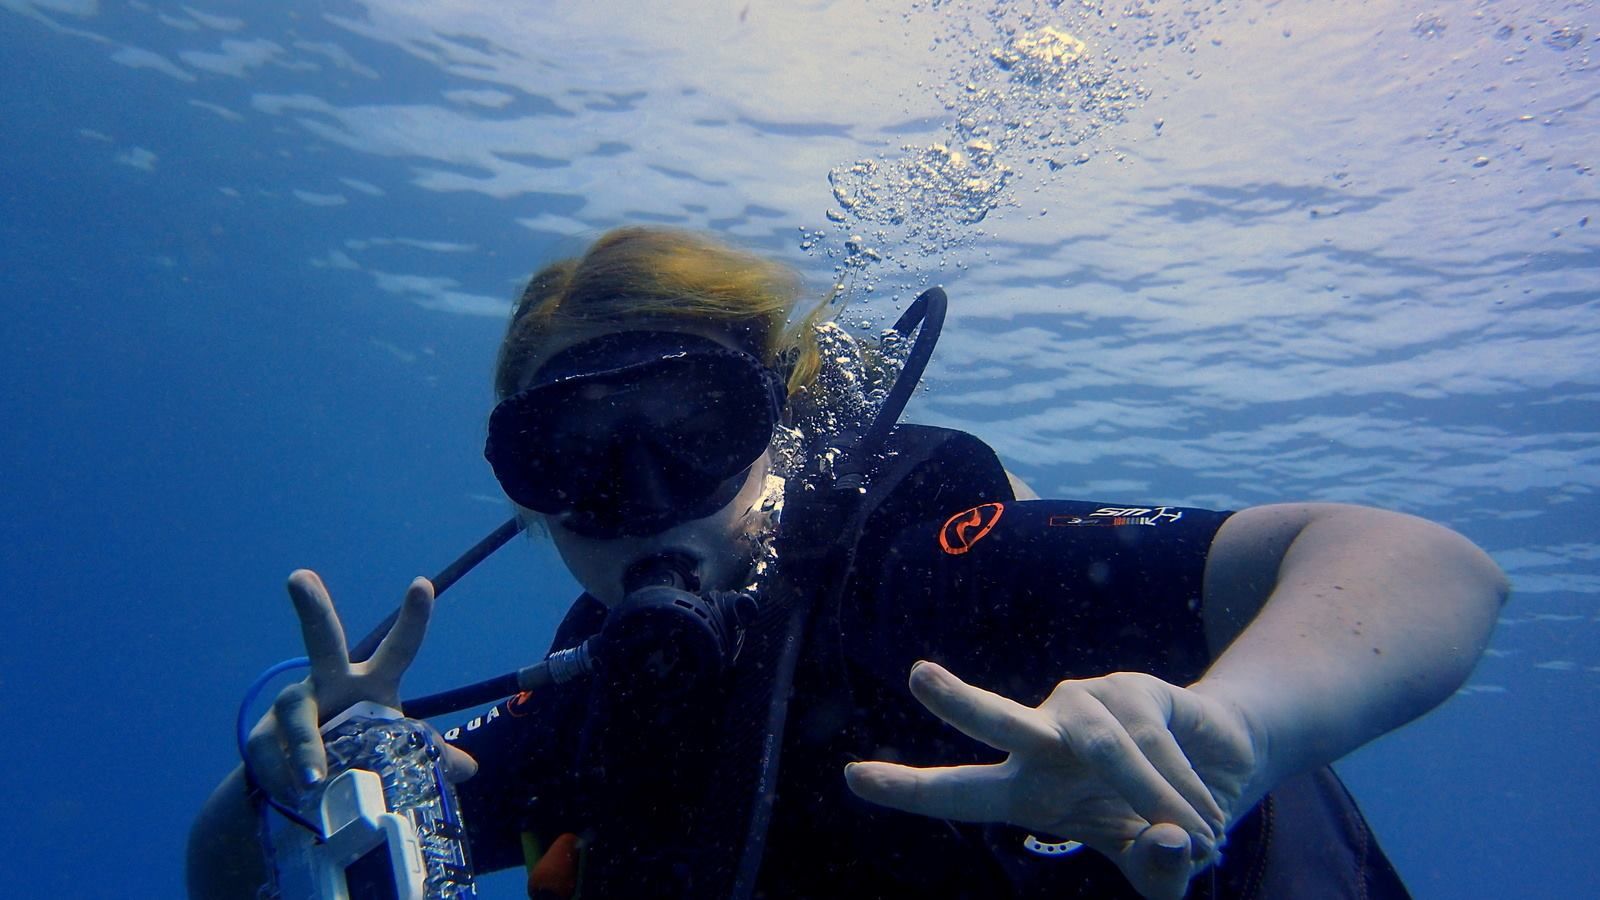 Hayley scuba diving in Indonesia